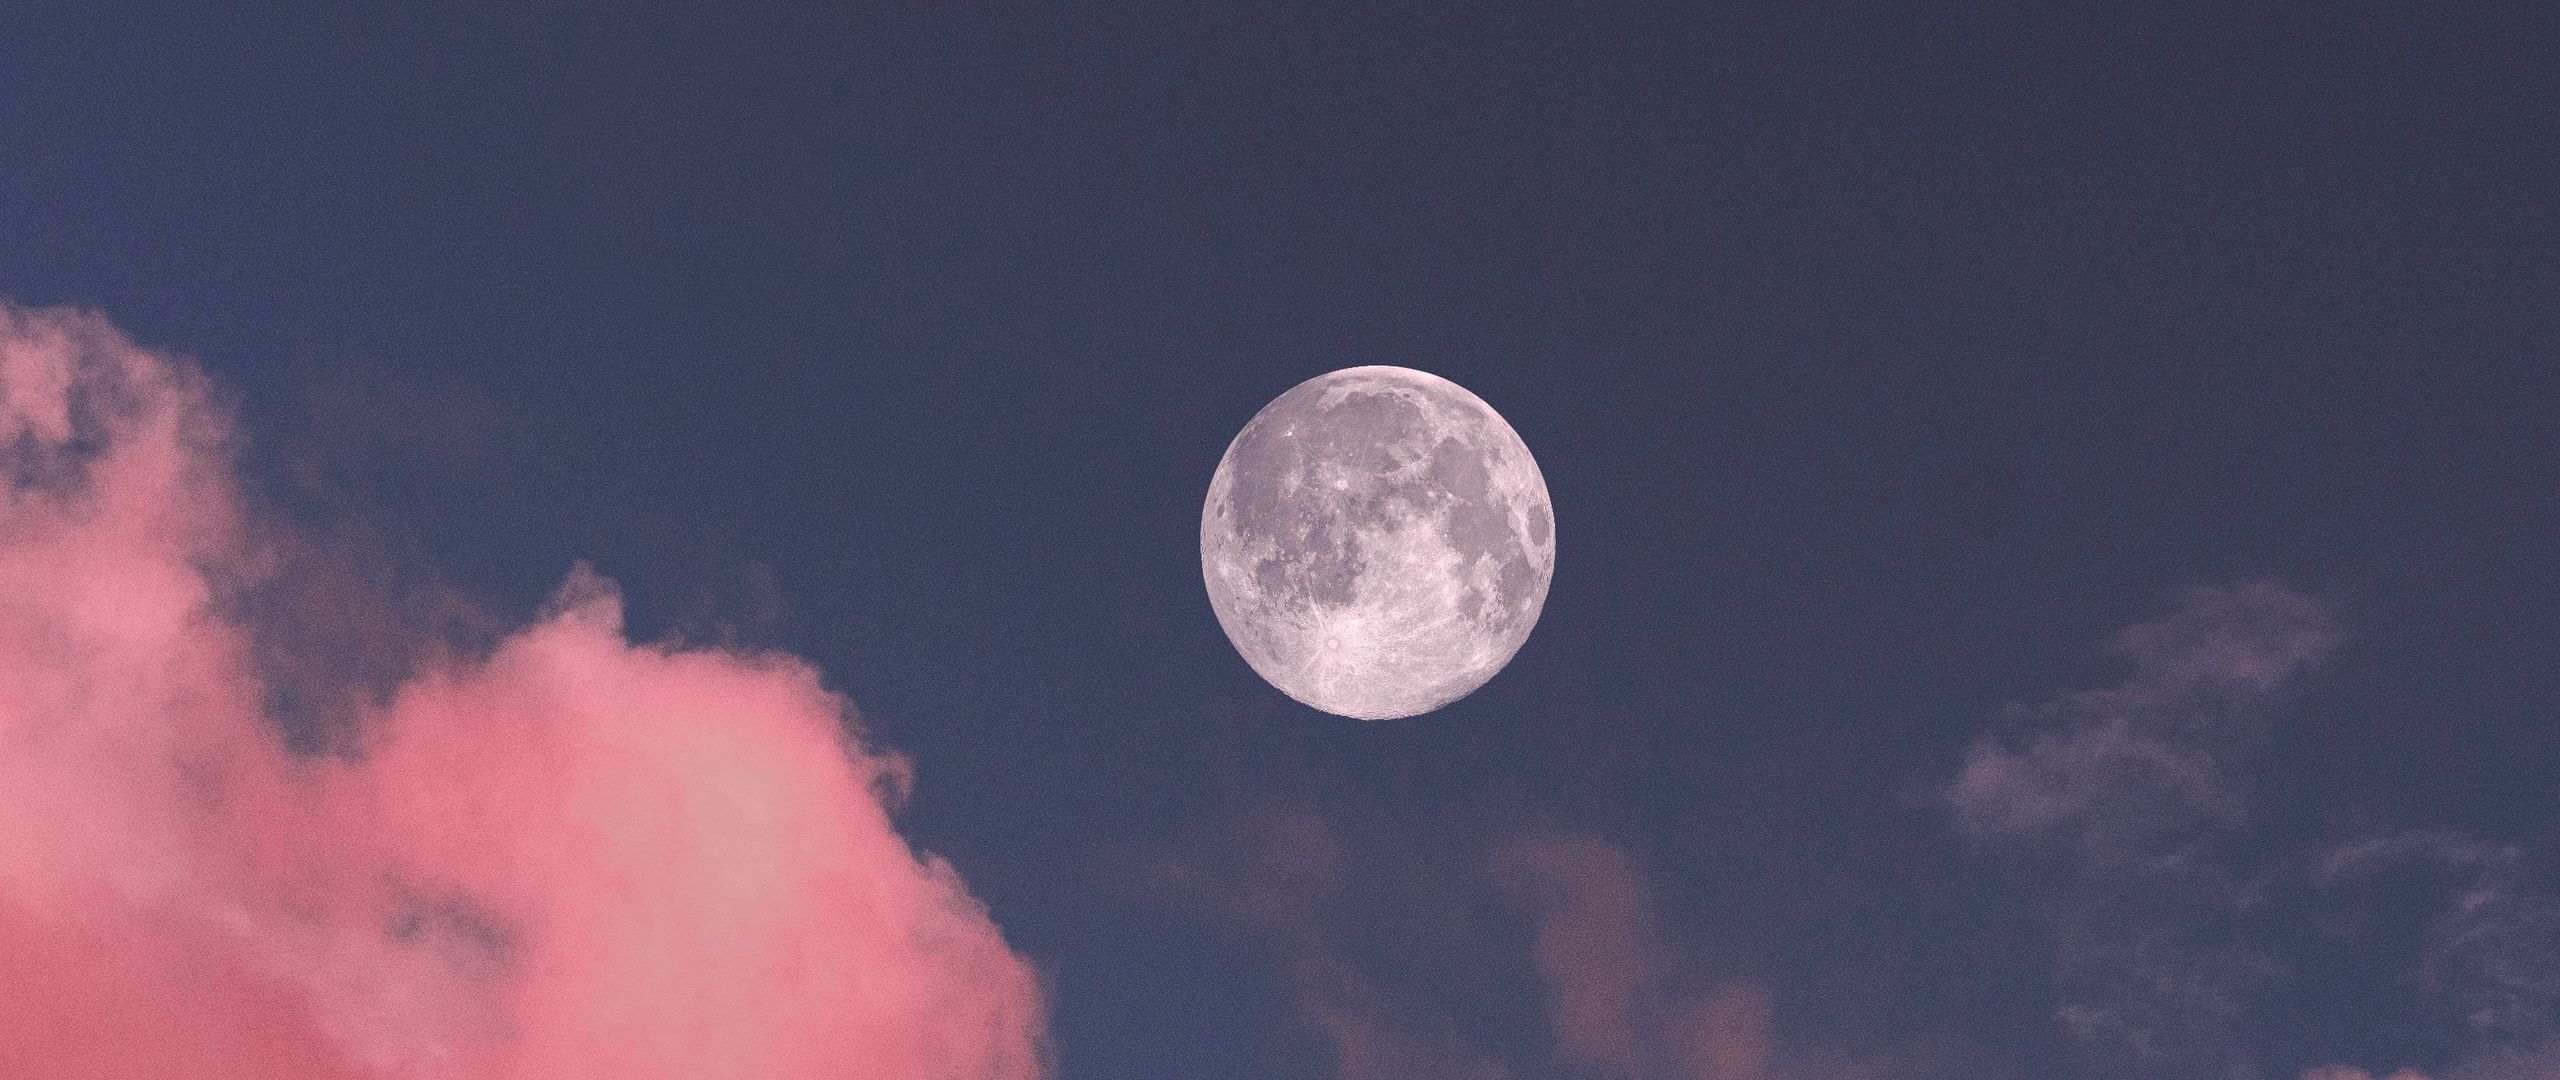 Ánh trăng dịu dàng và lãng mạn luôn khiến cho lòng người như say mê trong một chiều đêm trăng thanh. Nếu bạn cũng là một trong những người yêu thích ánh trăng, hãy cùng ngắm nhìn hình ảnh về chúng để thăng hoa cảm xúc của mình.